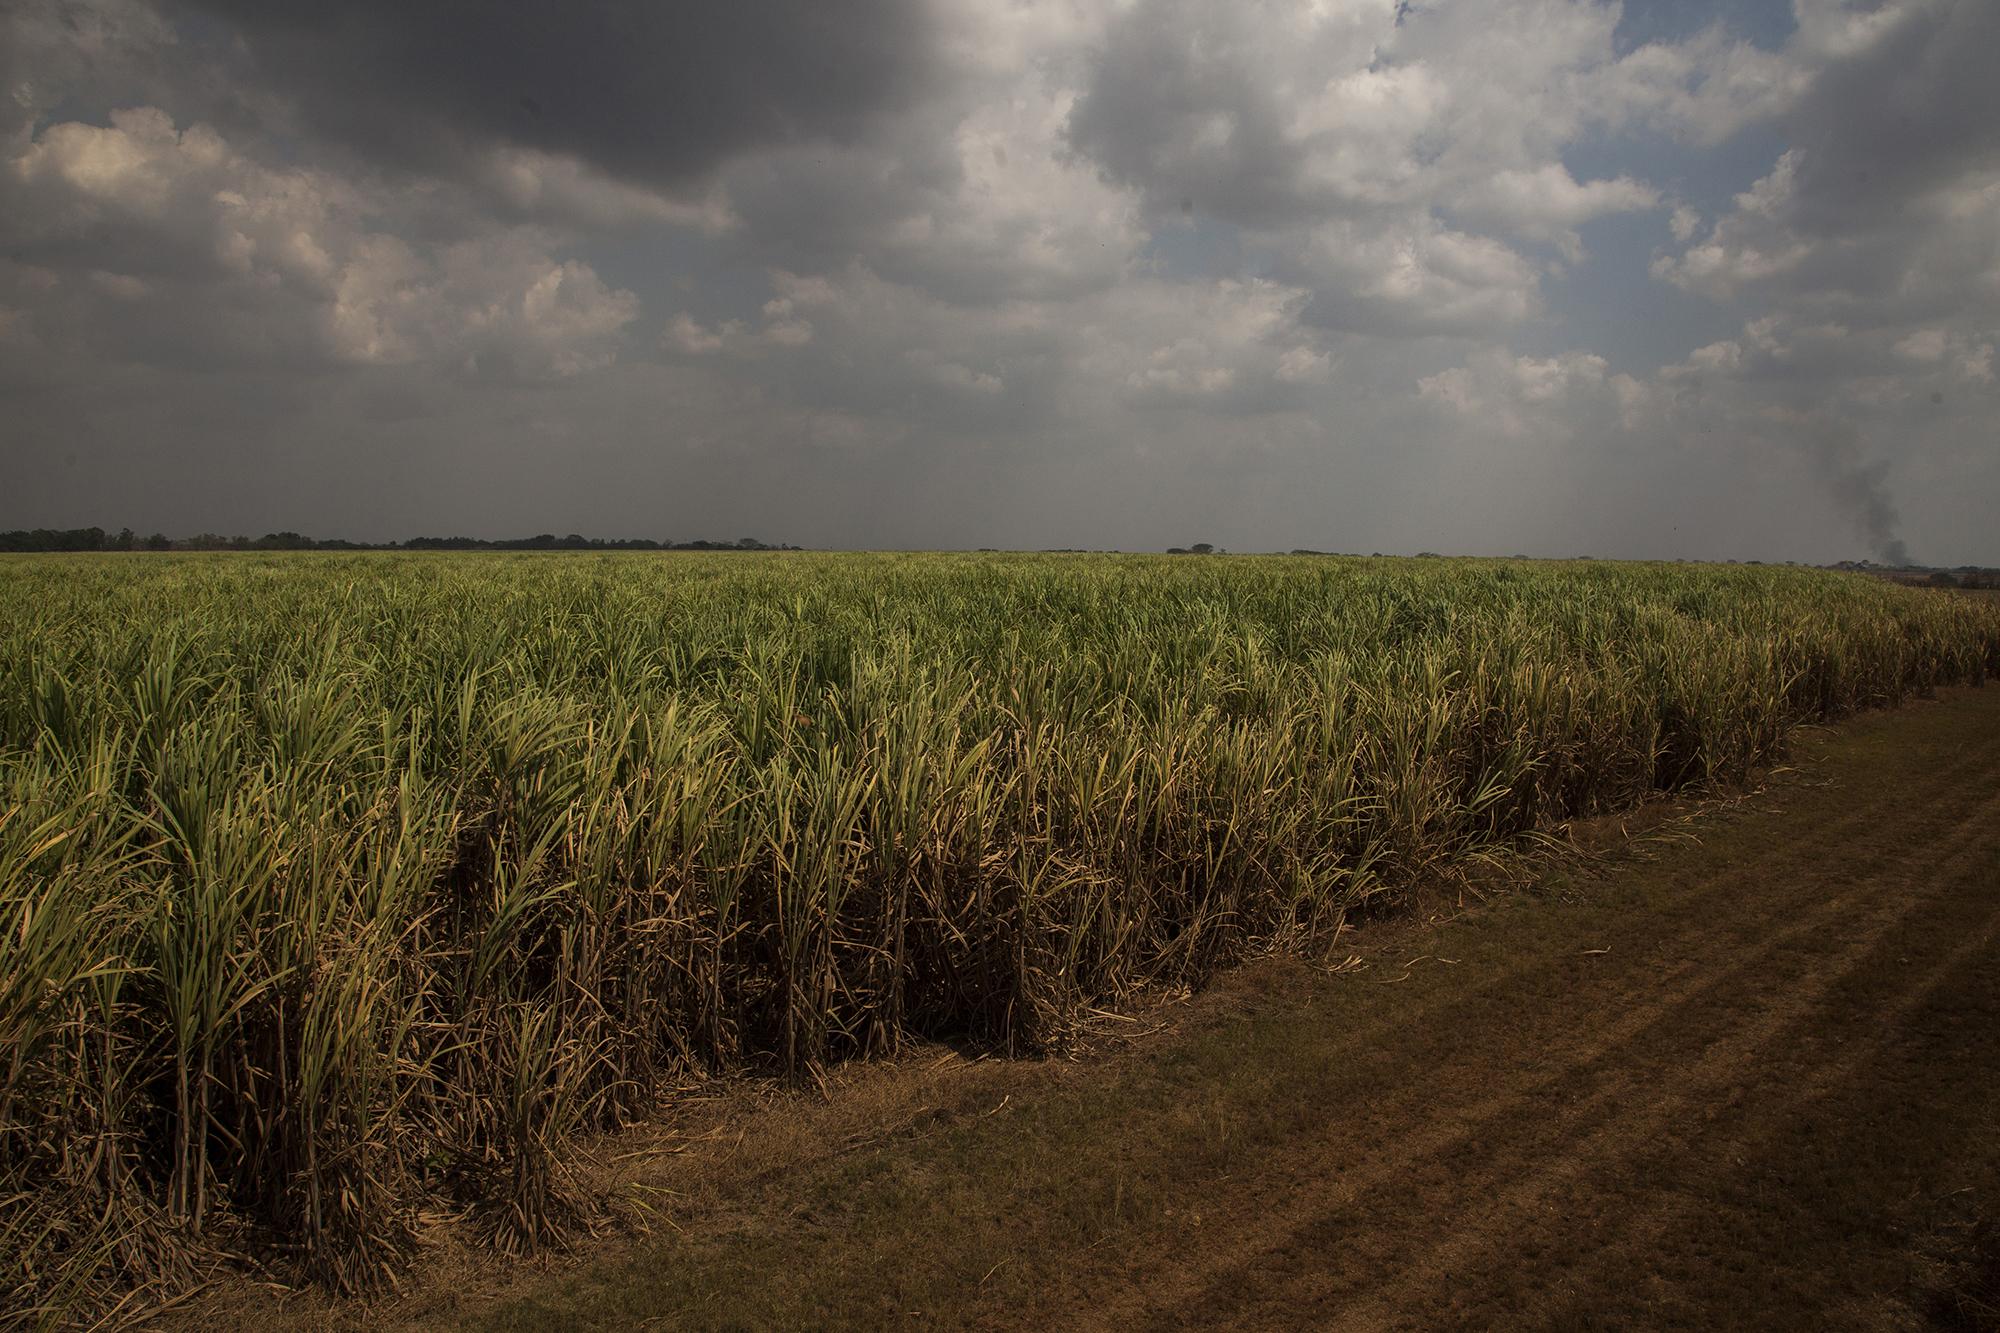 El 10% del territorio cultivable en Guatemala está lleno de caña de azúcar. Eso es tres veces el tamaño de la ciudad de Nueva York. La caña deja mejores réditos que cultivos como el café, y eso explica la sed por cultivarla. Los márgenes de ganancia en el mercado local y su exportación también son altos. Entre 2011 y 2016, el Estado guatemalteco recibió 708 millones de dólares en impuestos por parte de esta industria. En la imagen, un campo de caña en Nueva Cajolá, del municipio de Champerico, Retalhuleu. /Foto El Faro: Víctor Peña